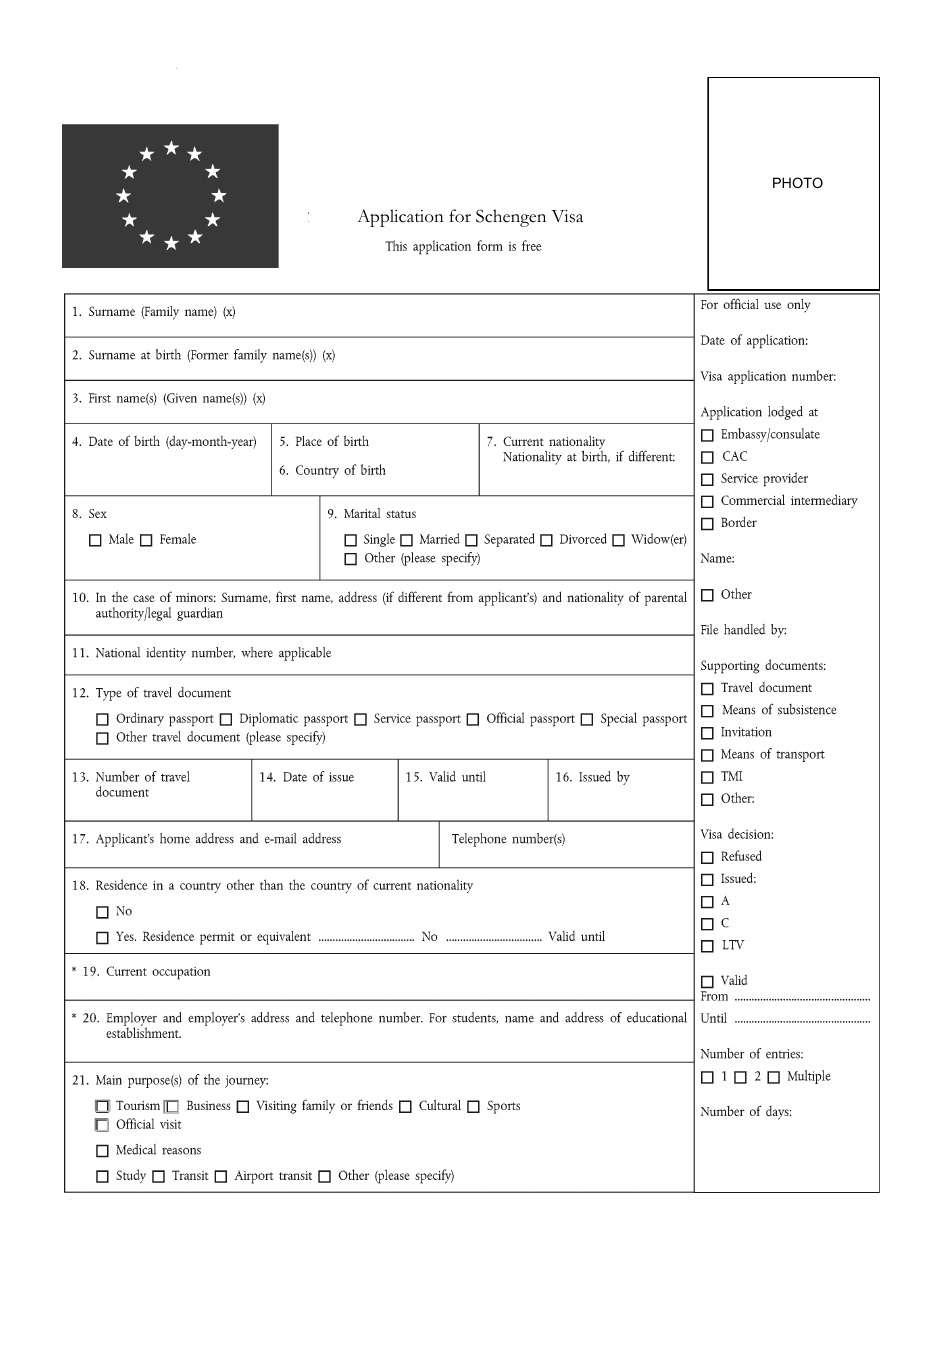 Netherlands Schengen Visa Application Form - Nigeria, Page 1